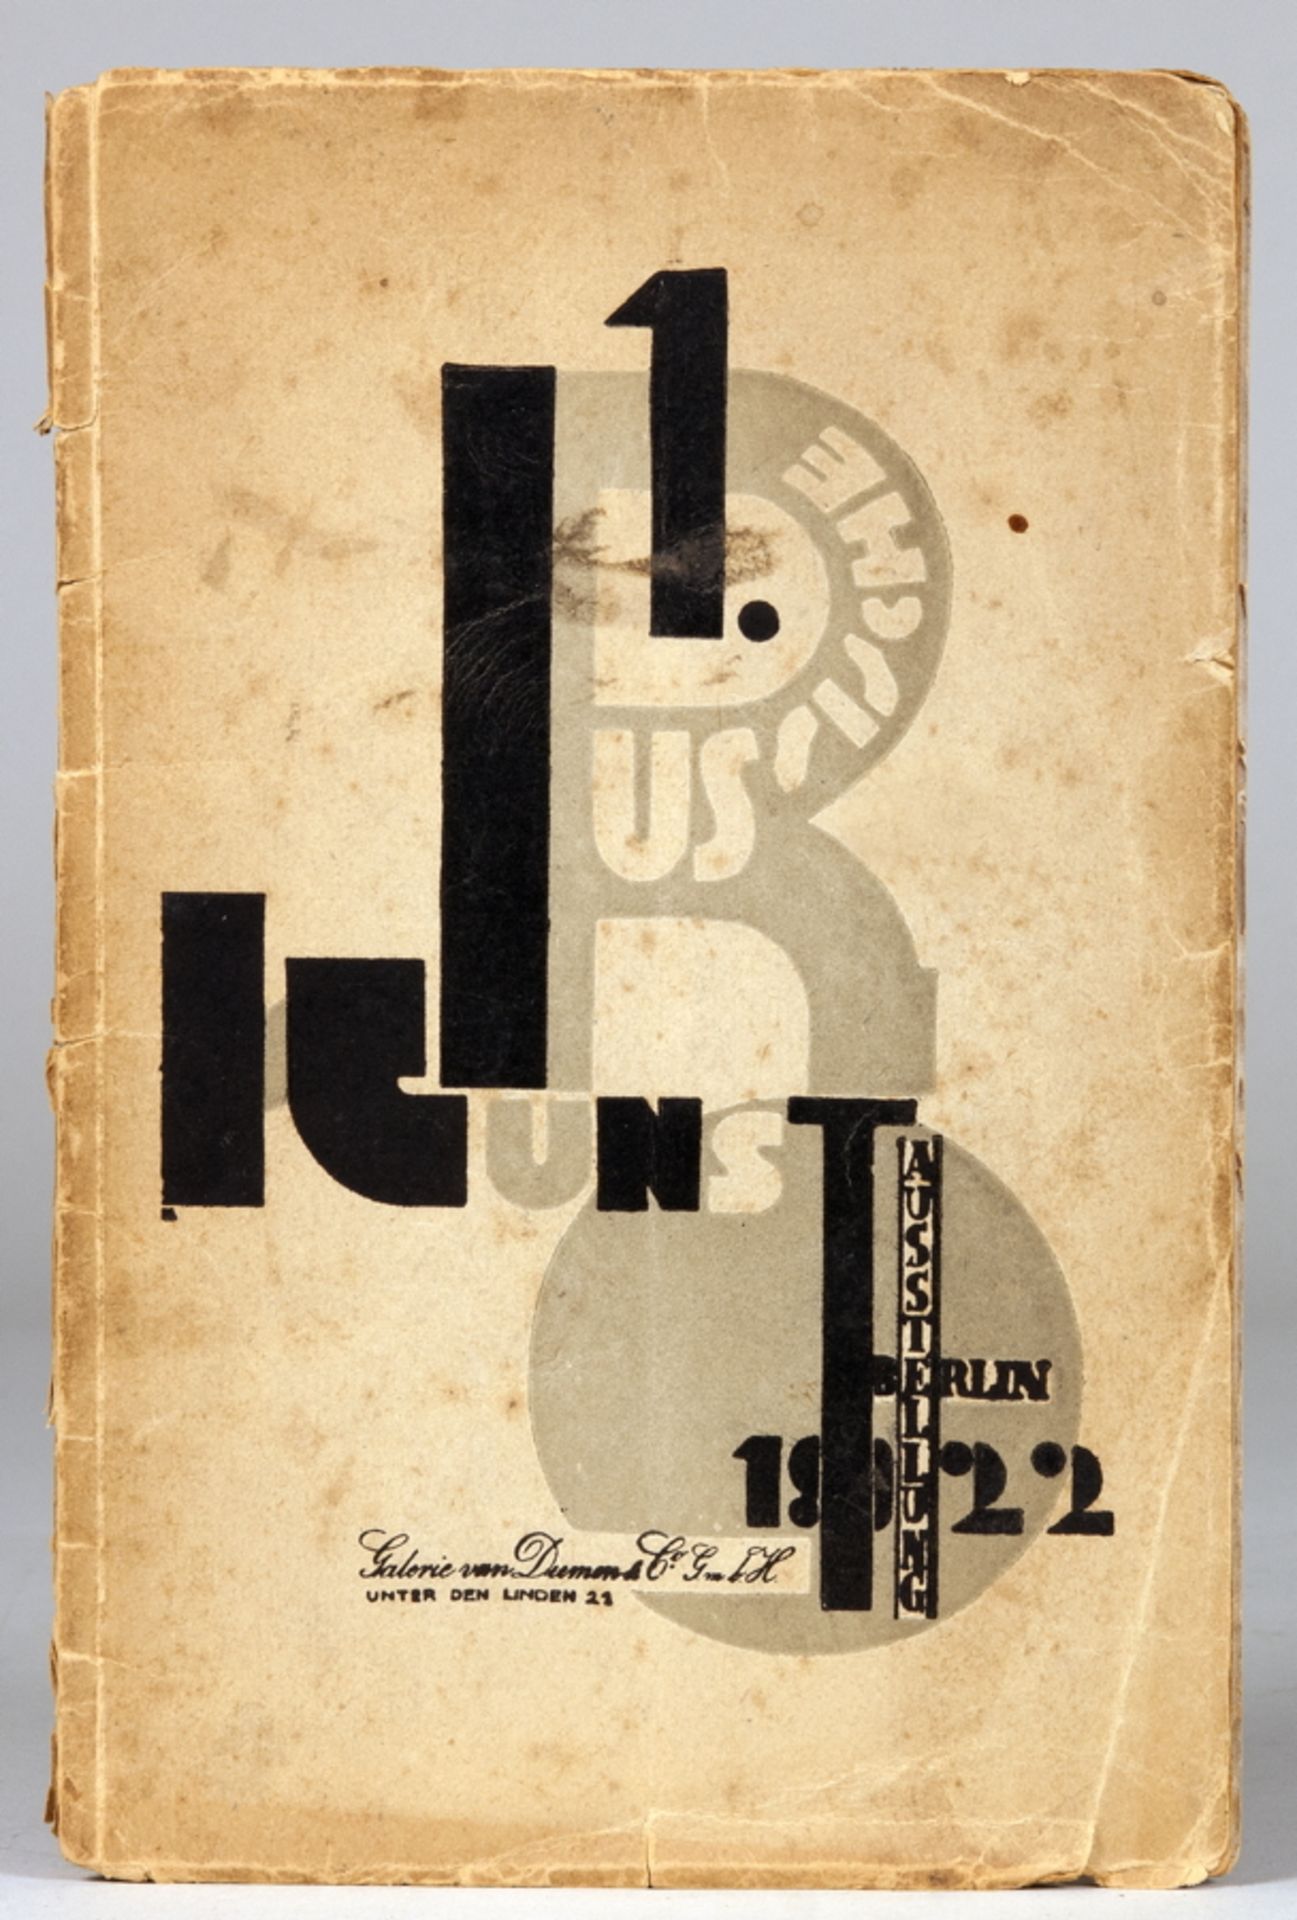 El Lissitzky - Erste Russische Kunstausstellung Berlin 1922. [Ausstellungskatalog]. Berlin,